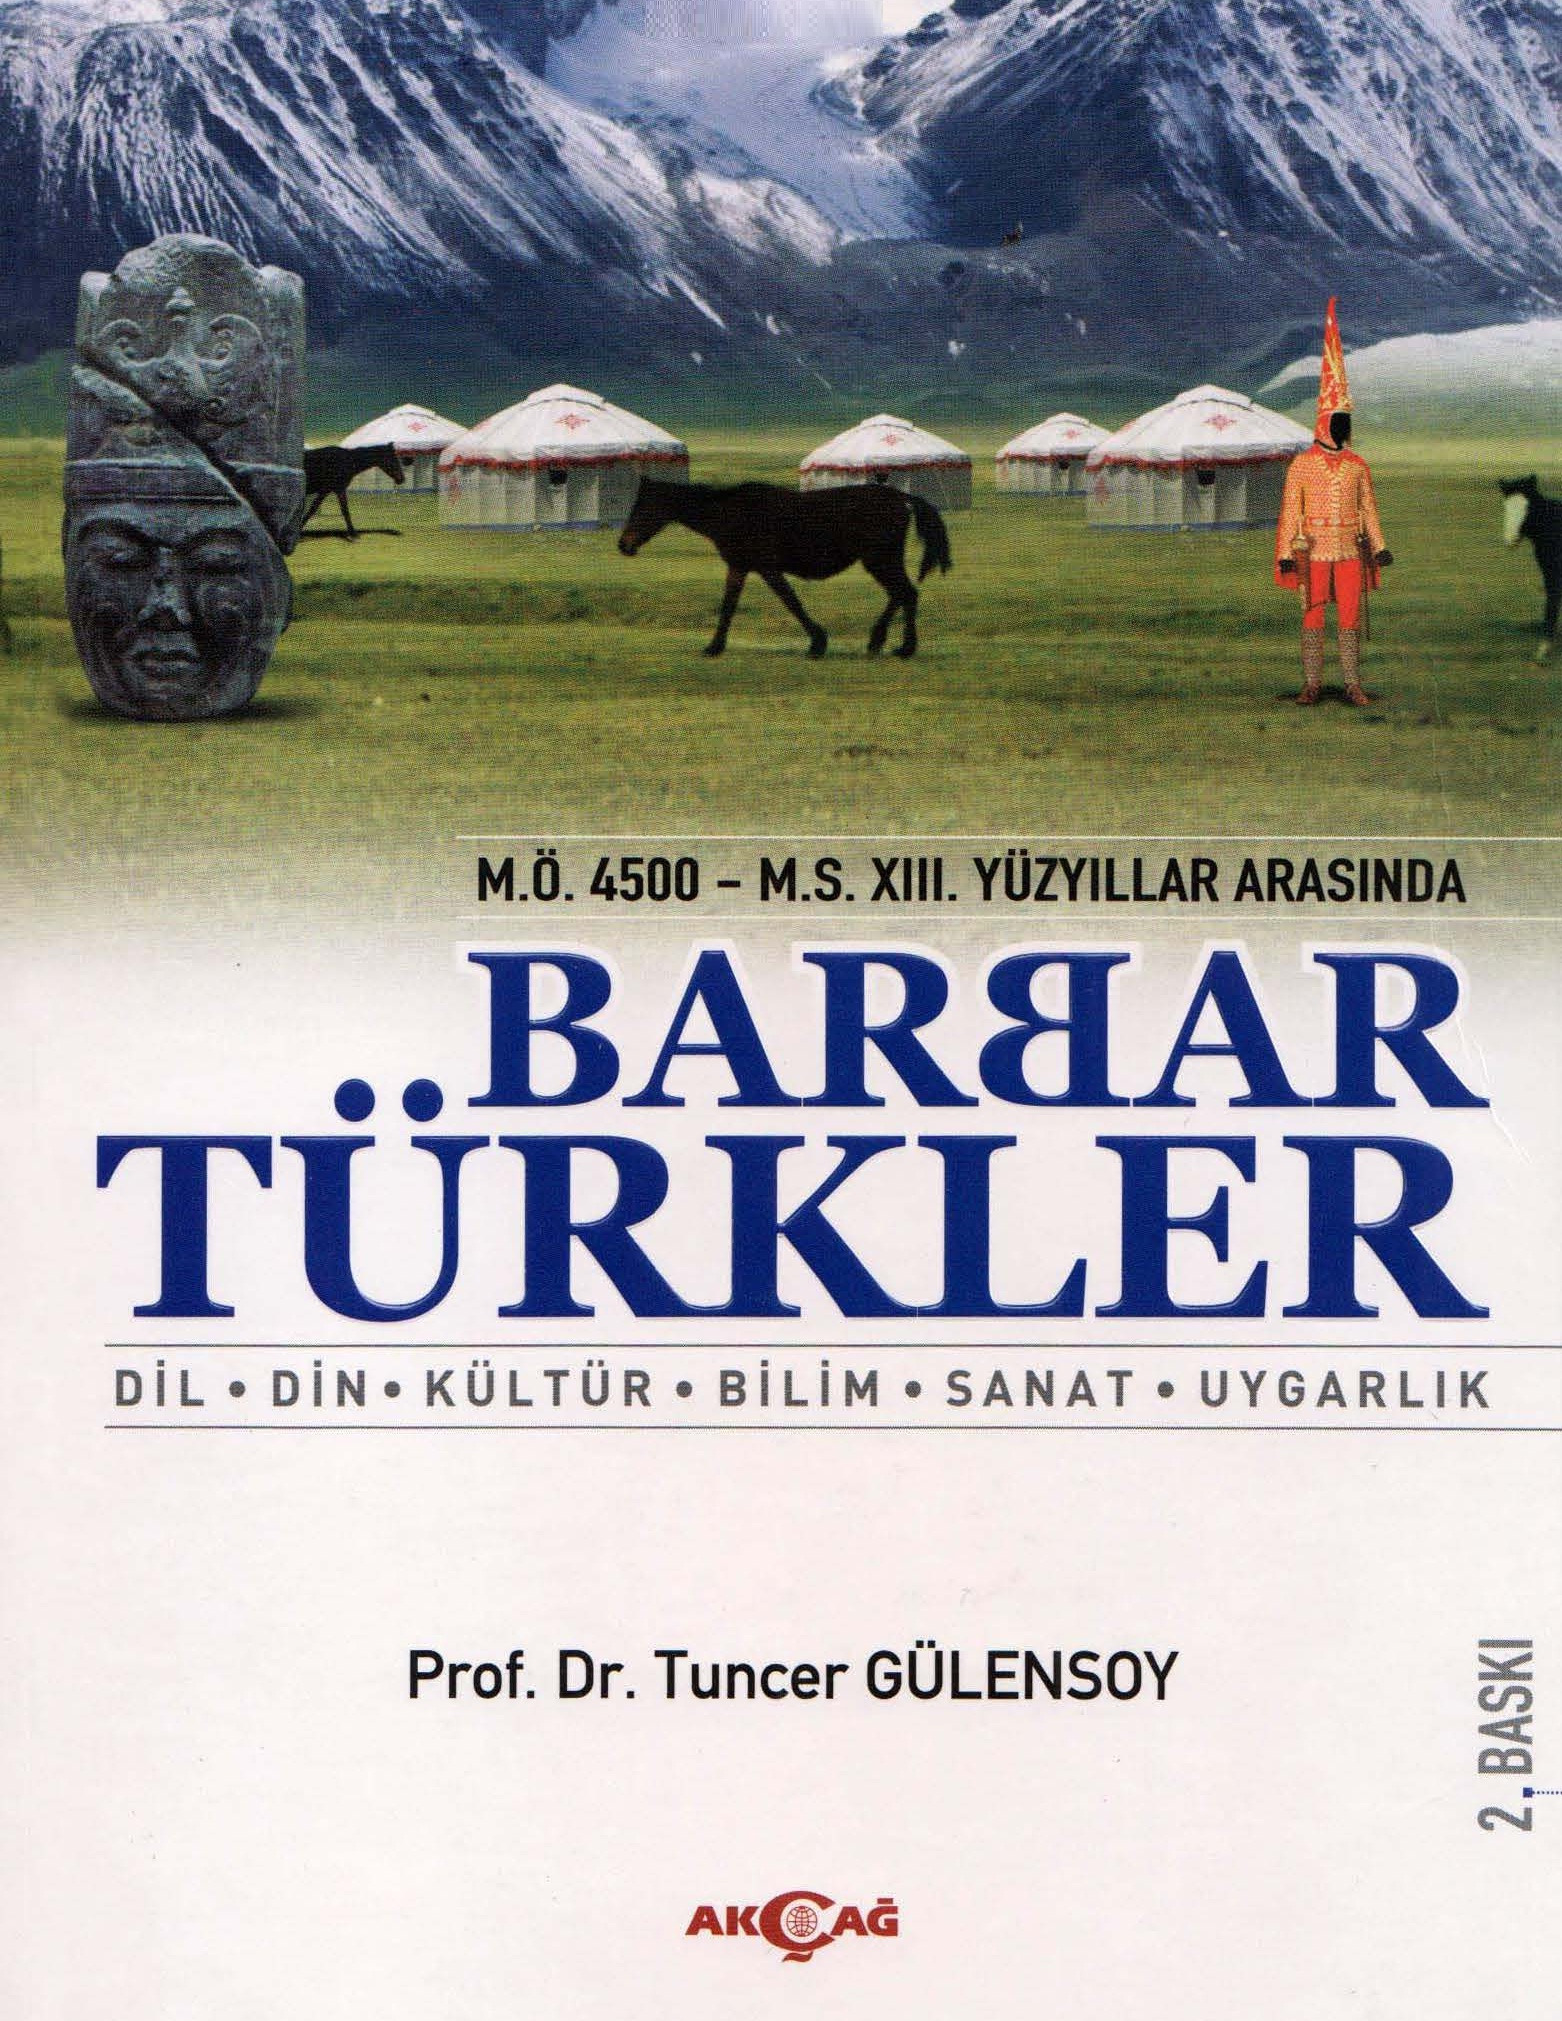 M.Ö.4500-Ms.XIII. Yüzyıllar Arasında Barbar Türkler-Dil-Din-Kültür-Bilim-Sanat-Uyqarlıq-Tuncer Gülensoy-2011-496s